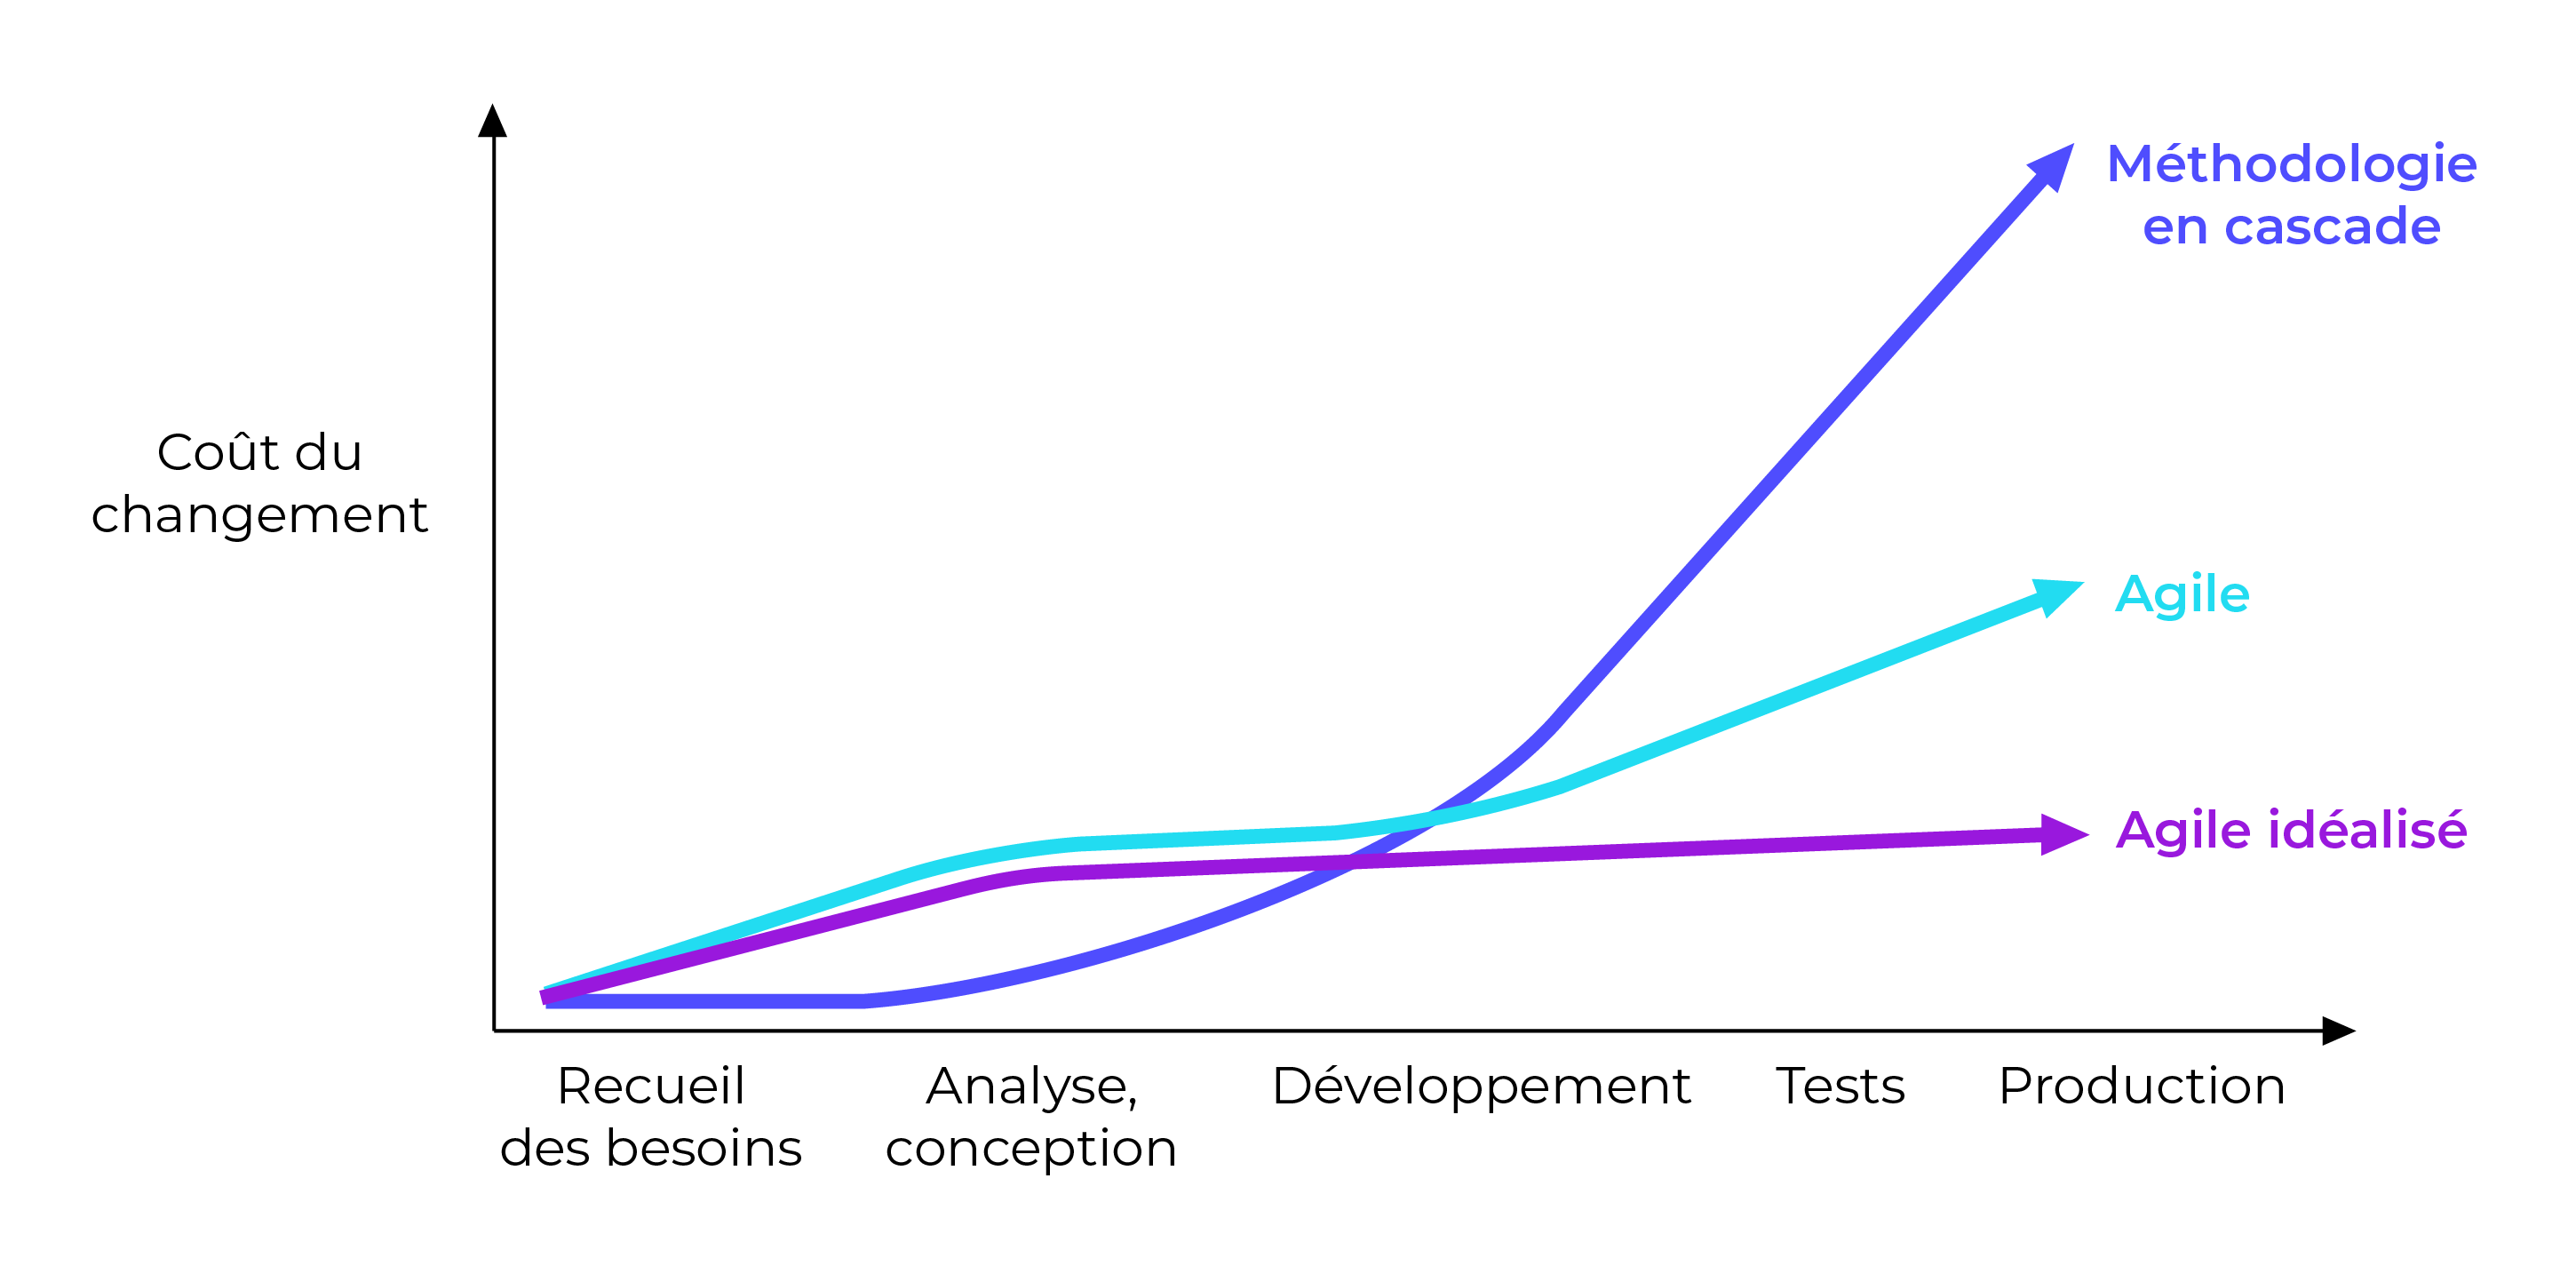 Graphique représentant le coût du changement selon 3 méthodologies : en cascade, agile idéalisée et agile